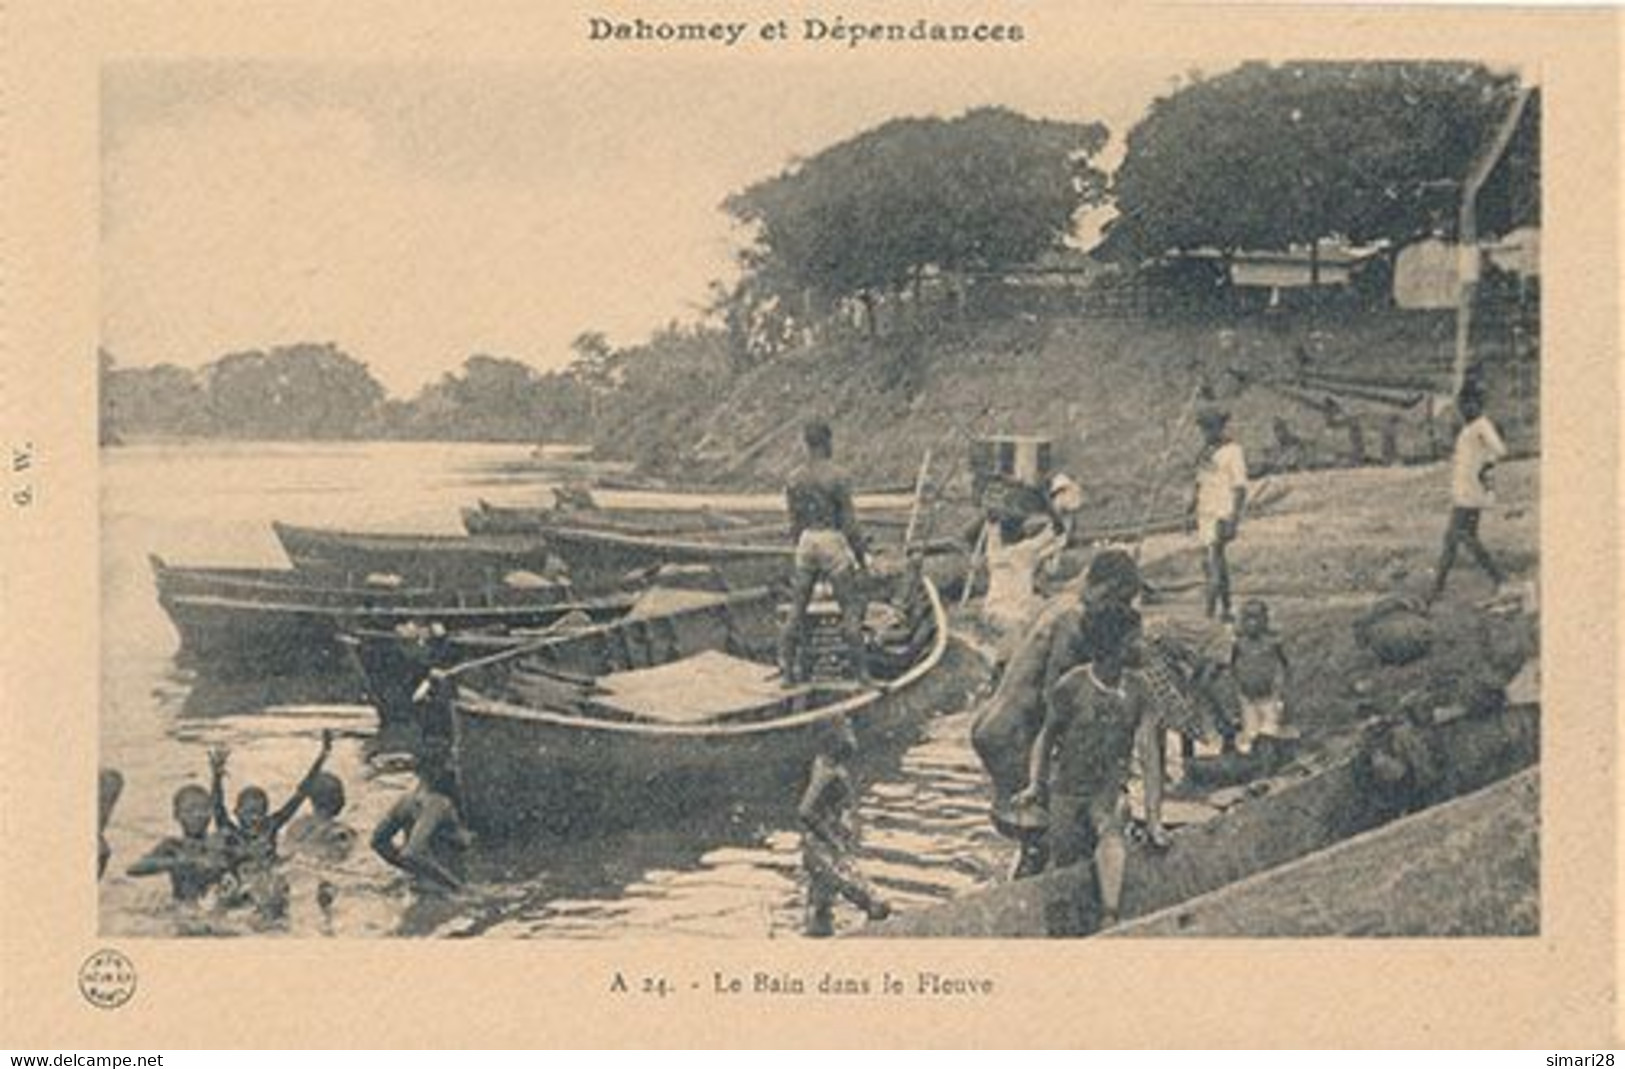 DAHOMEY ET DEPENDANCES - N° 24 - LE BAIN DANS LE FLEUVE (CP DE CARNET) - Dahomey